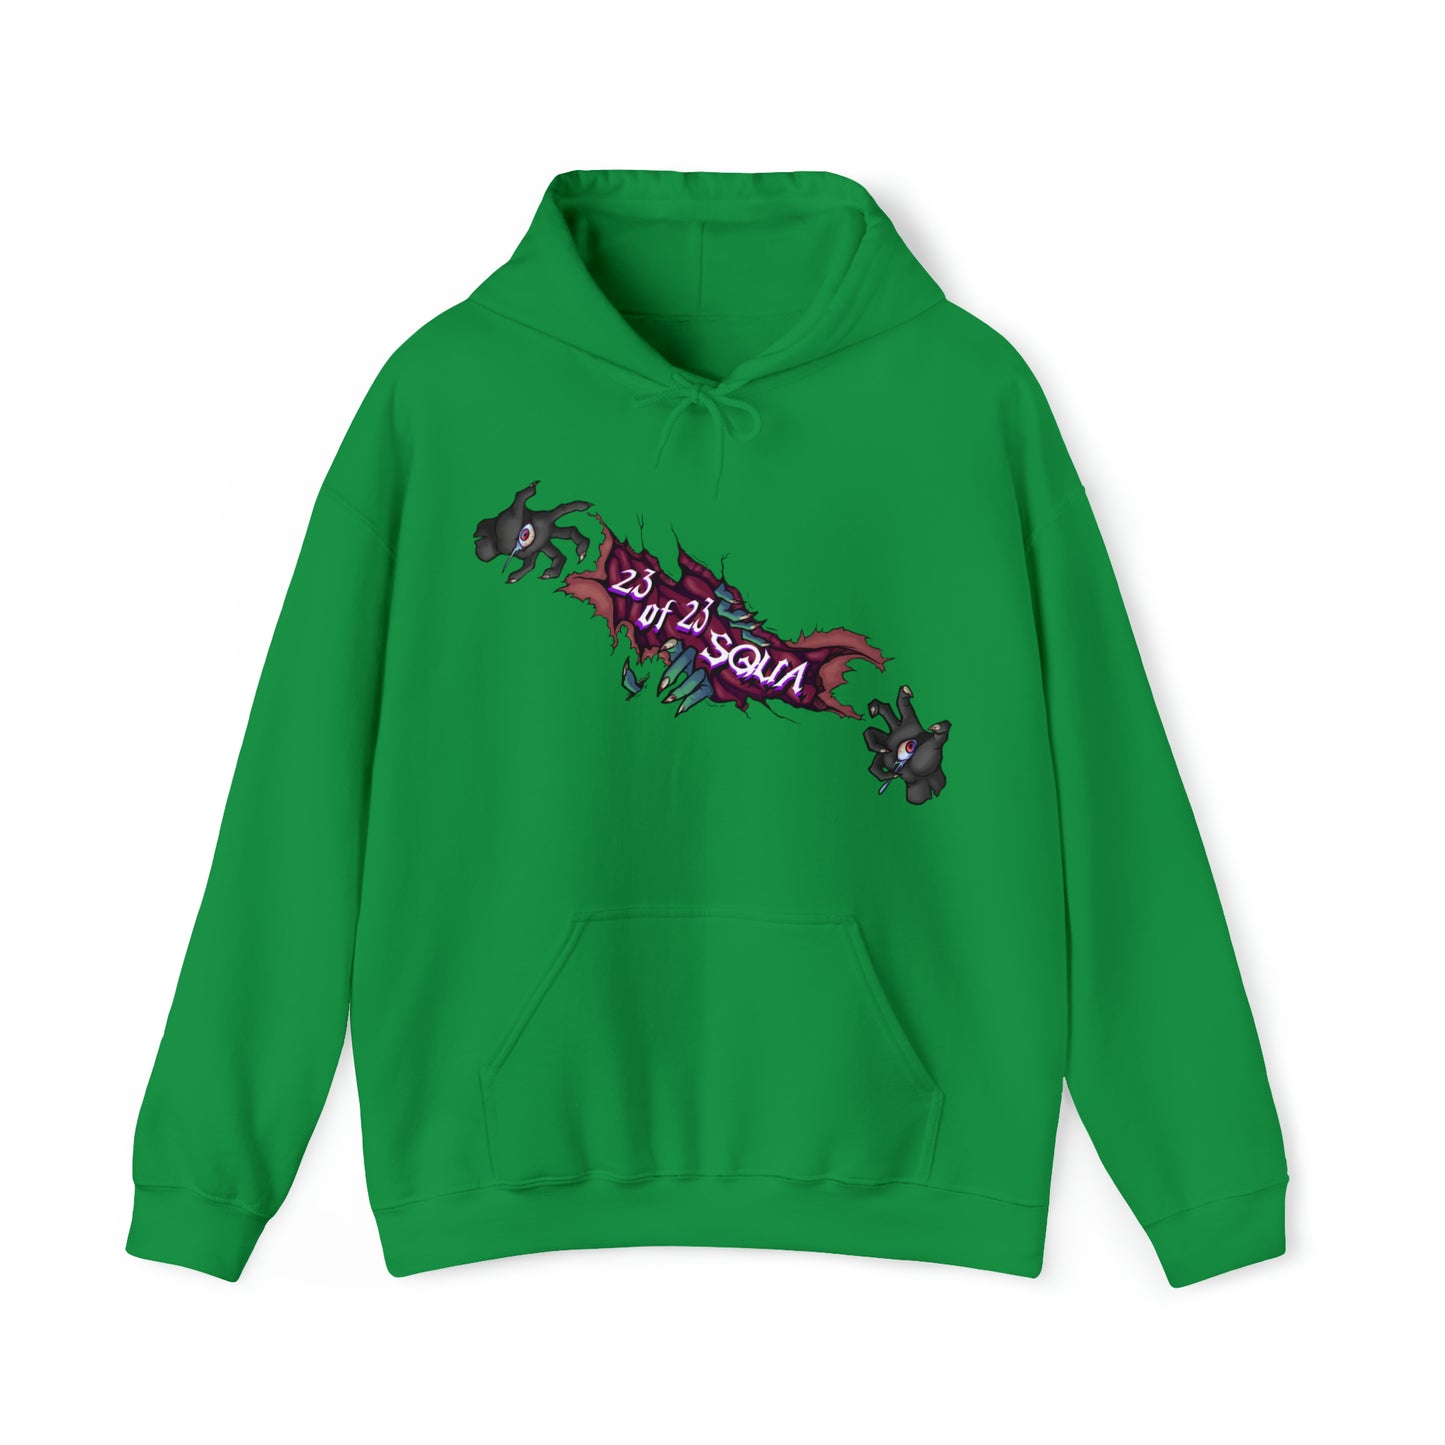 Evel Girl™ Hooded Sweatshirt